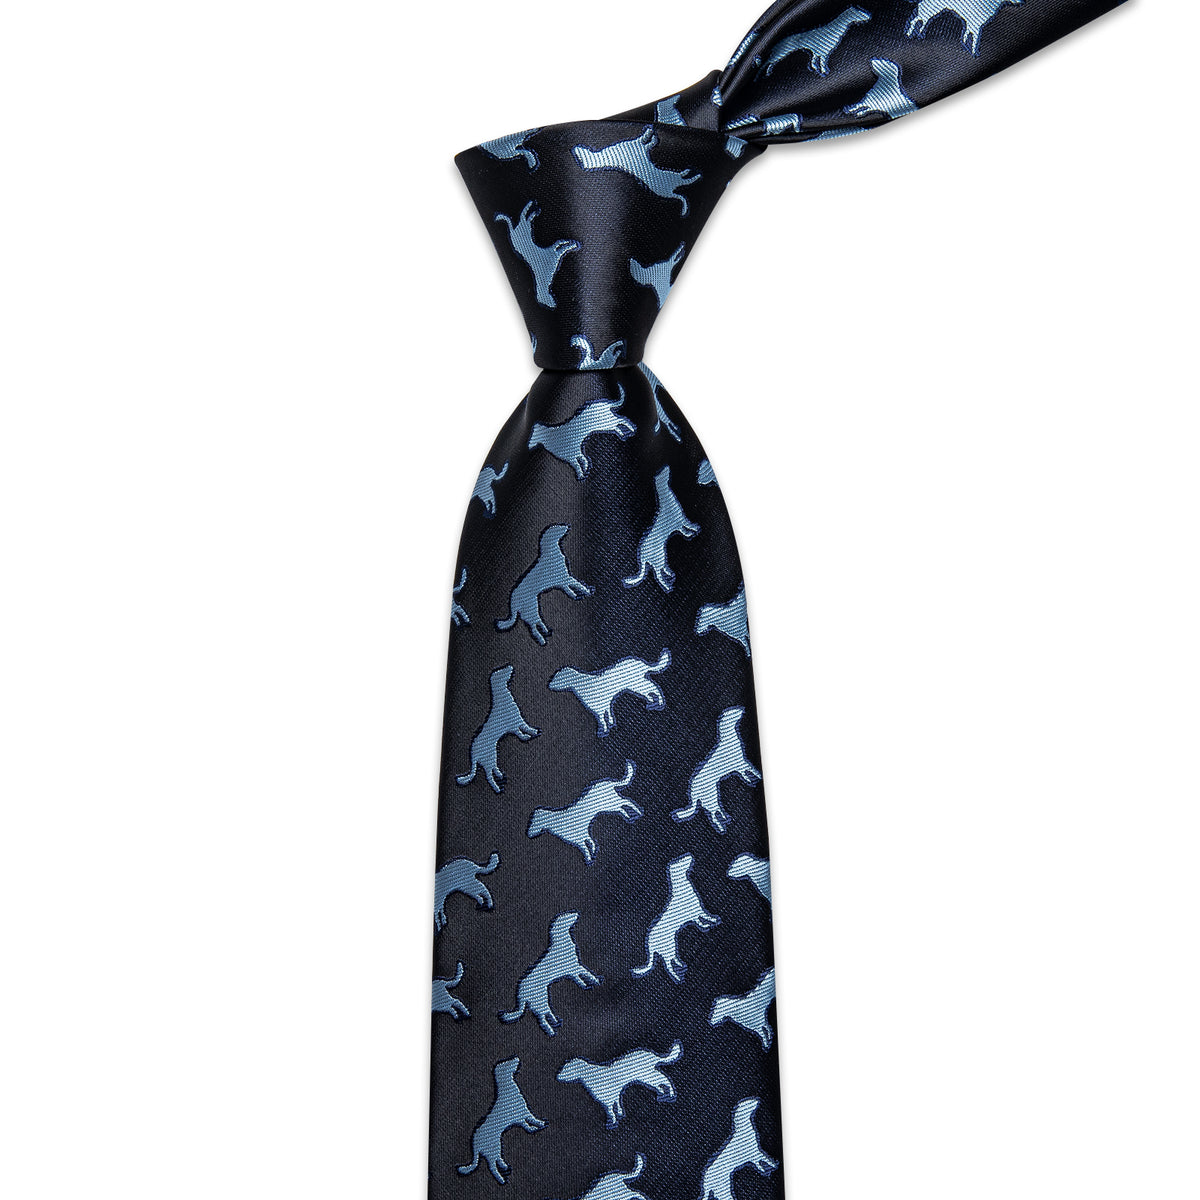 Black Blue Novelty Animals Men's Necktie Pocket Square Cufflinks Set